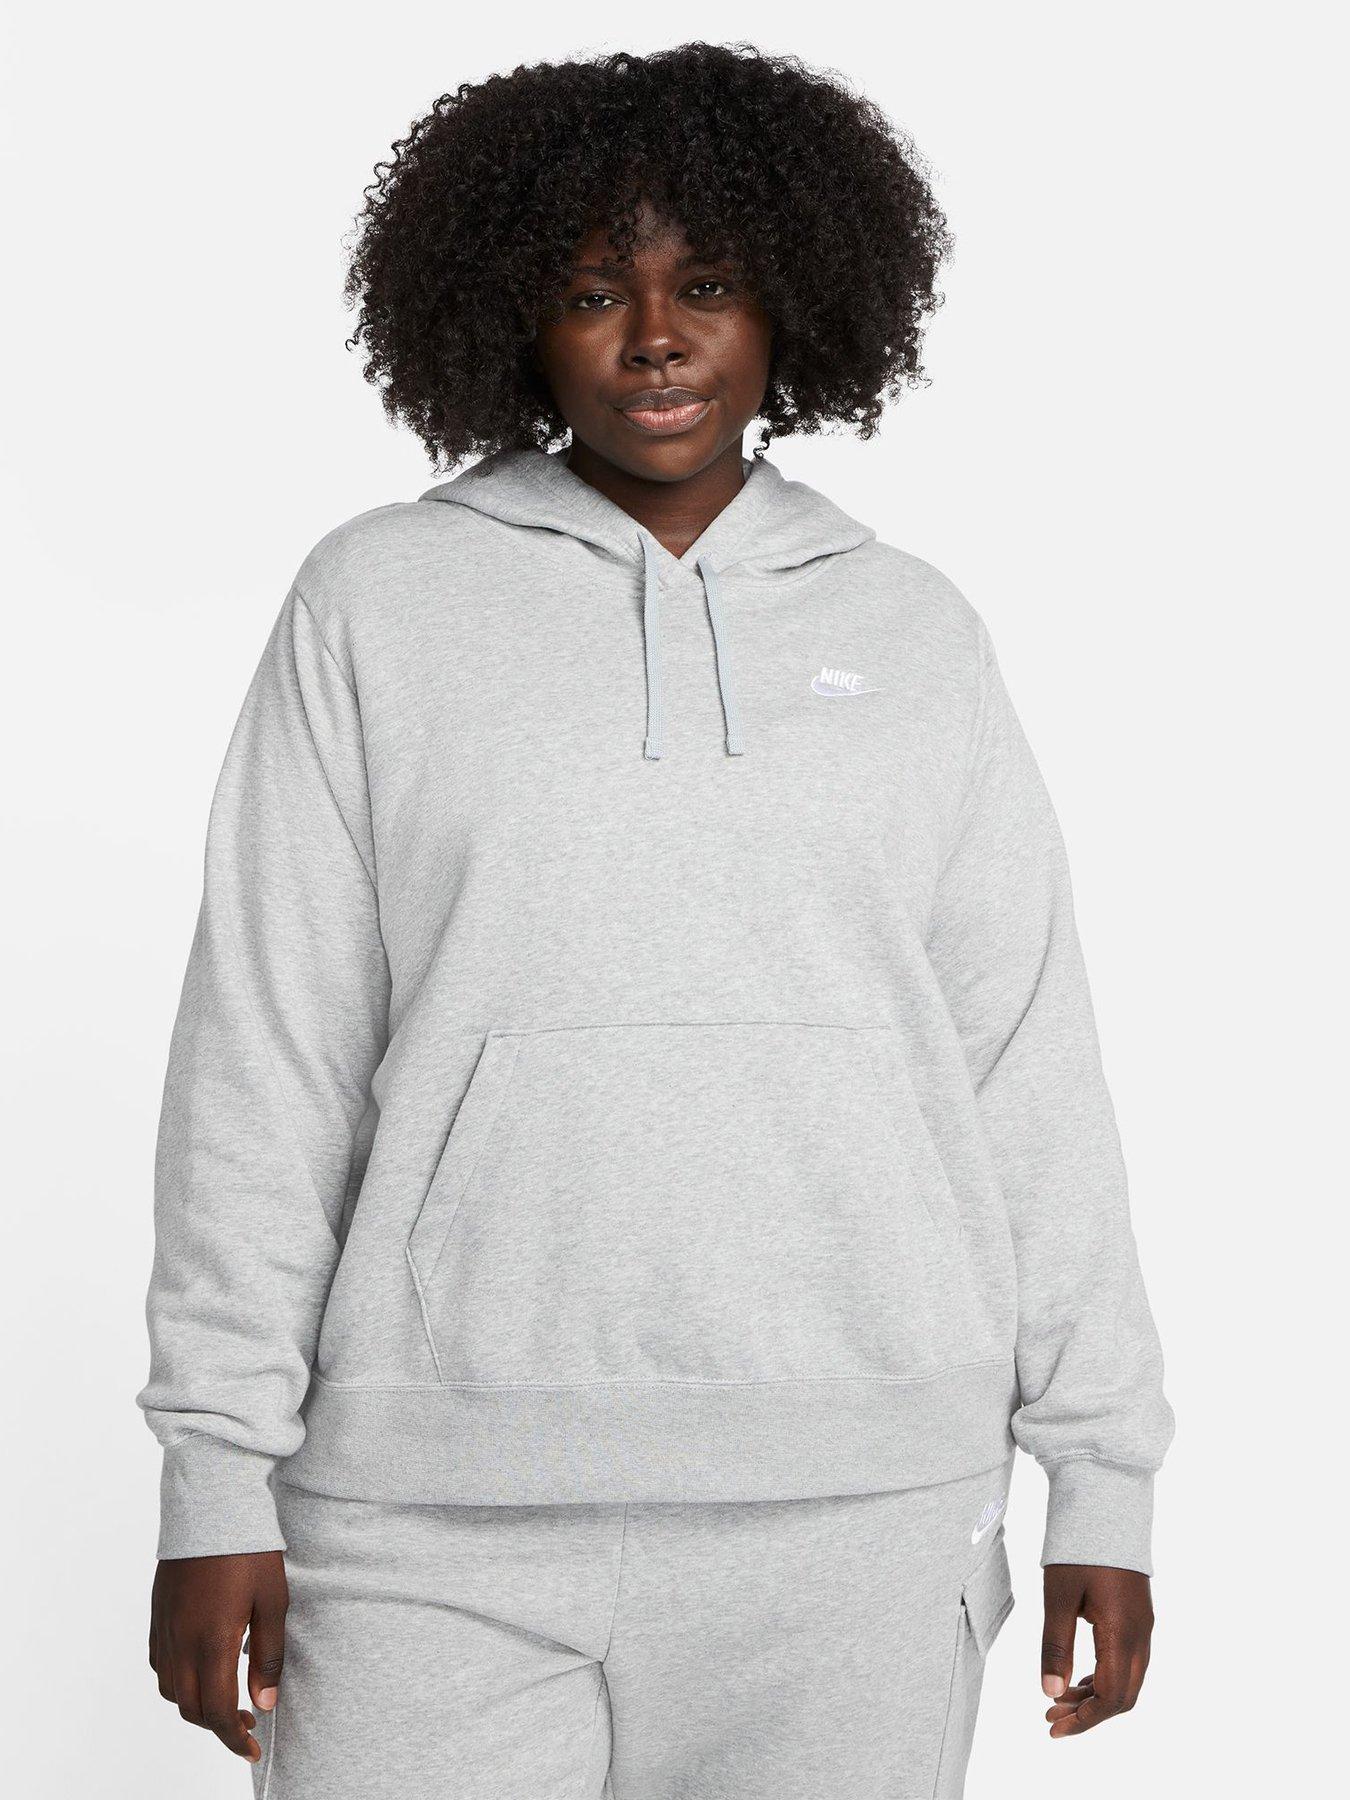 Nike Sweatpants - Club Fleece Light grey, Women